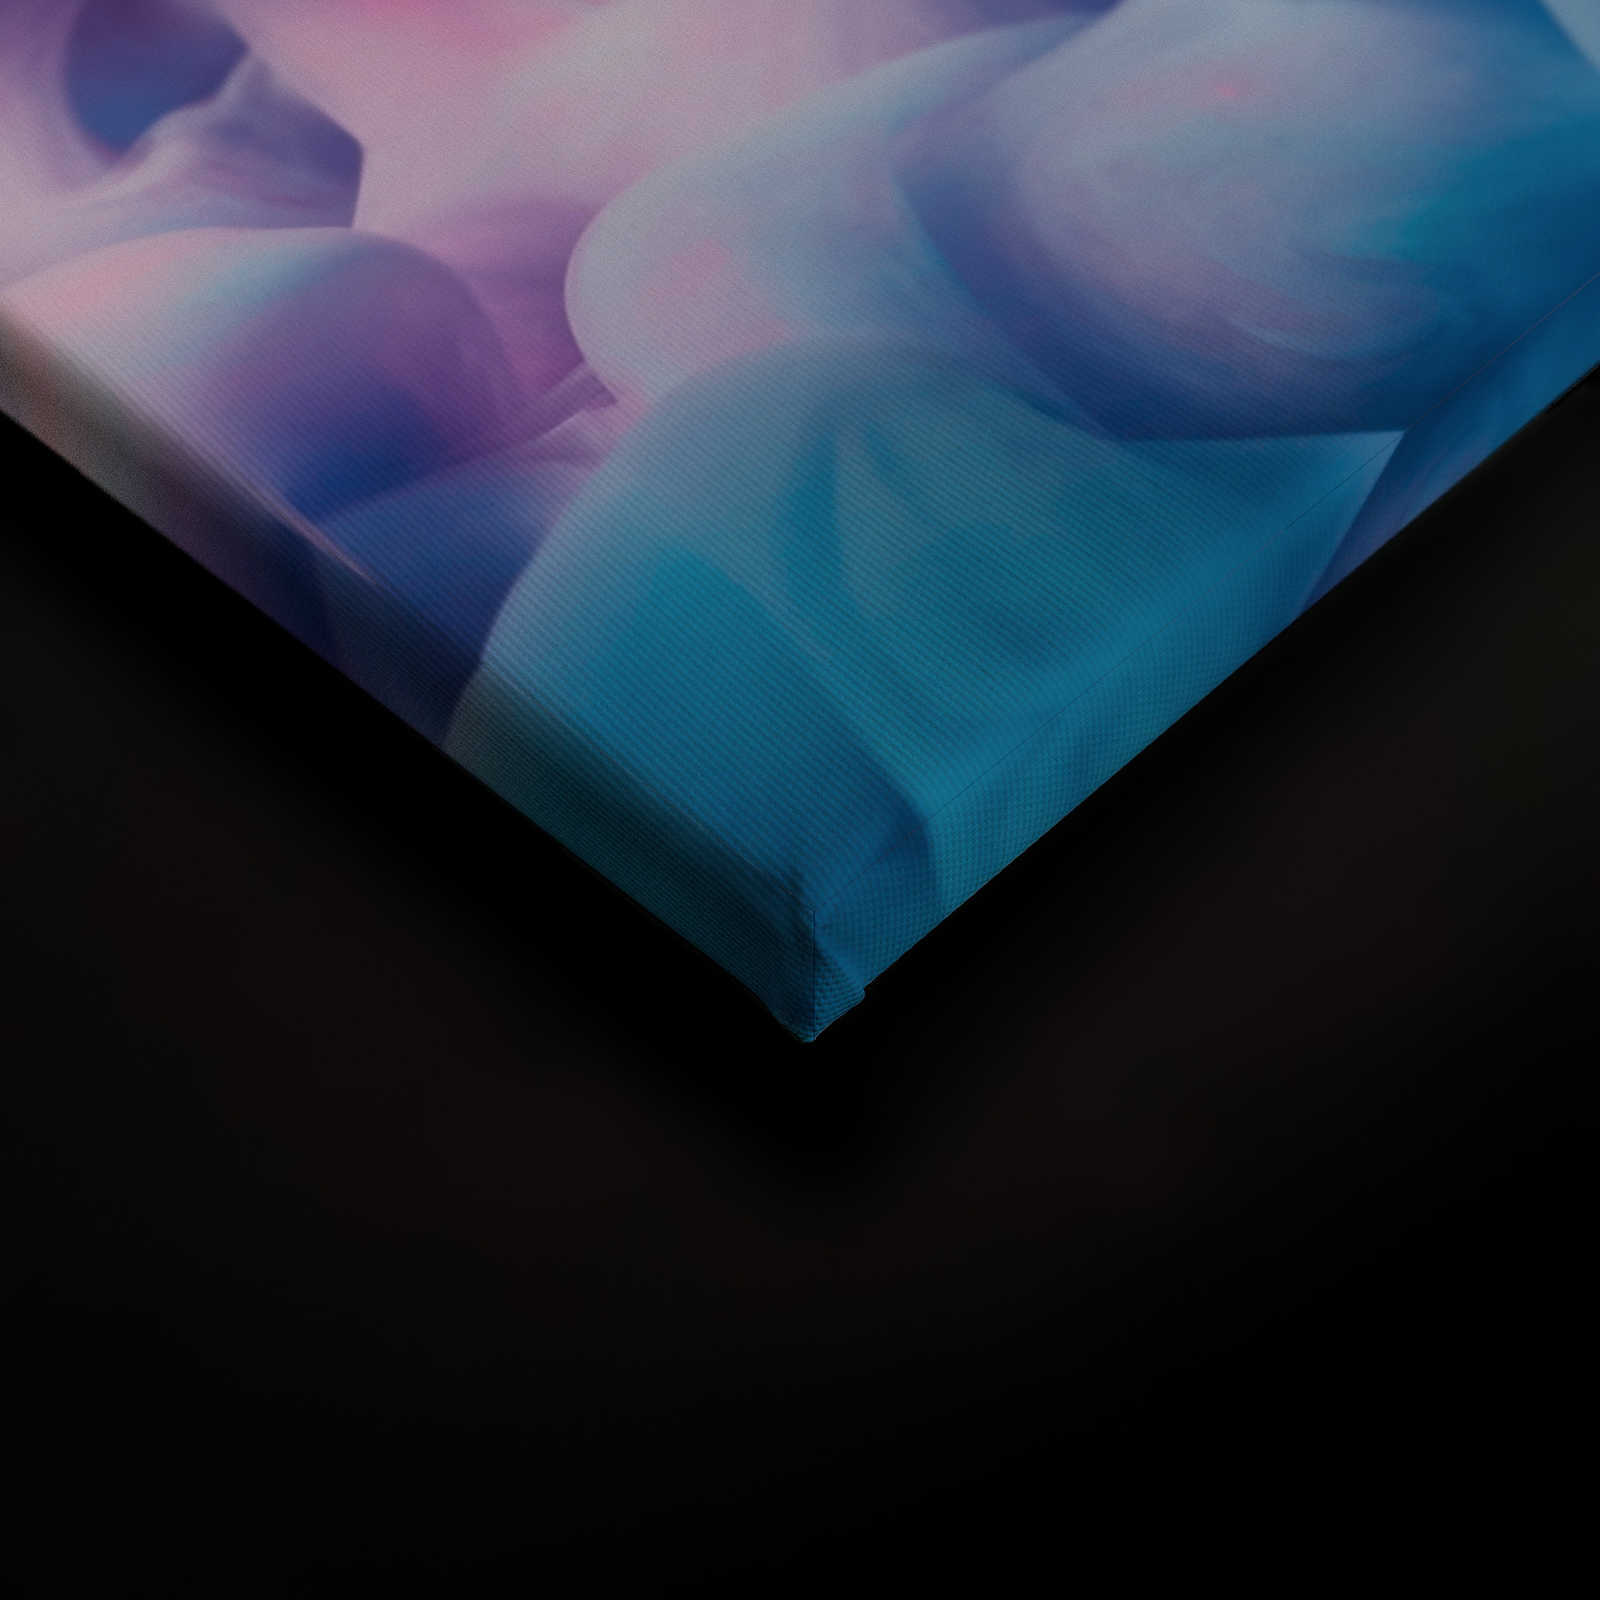             Toile fumée colorée |Rose, bleu, blanc - 0,90 m x 0,60 m
        